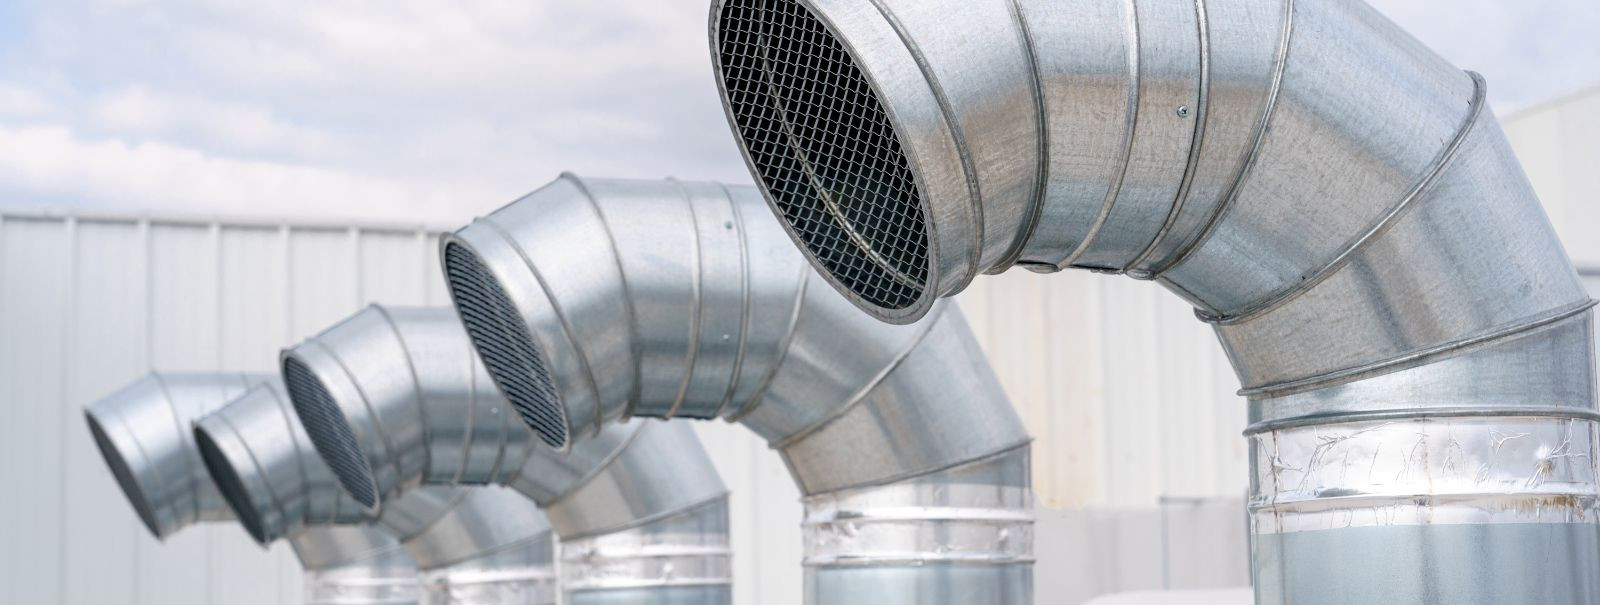 Õhukanalid on igas HVAC-süsteemis kriitilise tähtsusega, toimides teie kodu või hoone hingamisteede võrgustikuna. Nad ringlusesoojendatud või jahutatud õhku kog